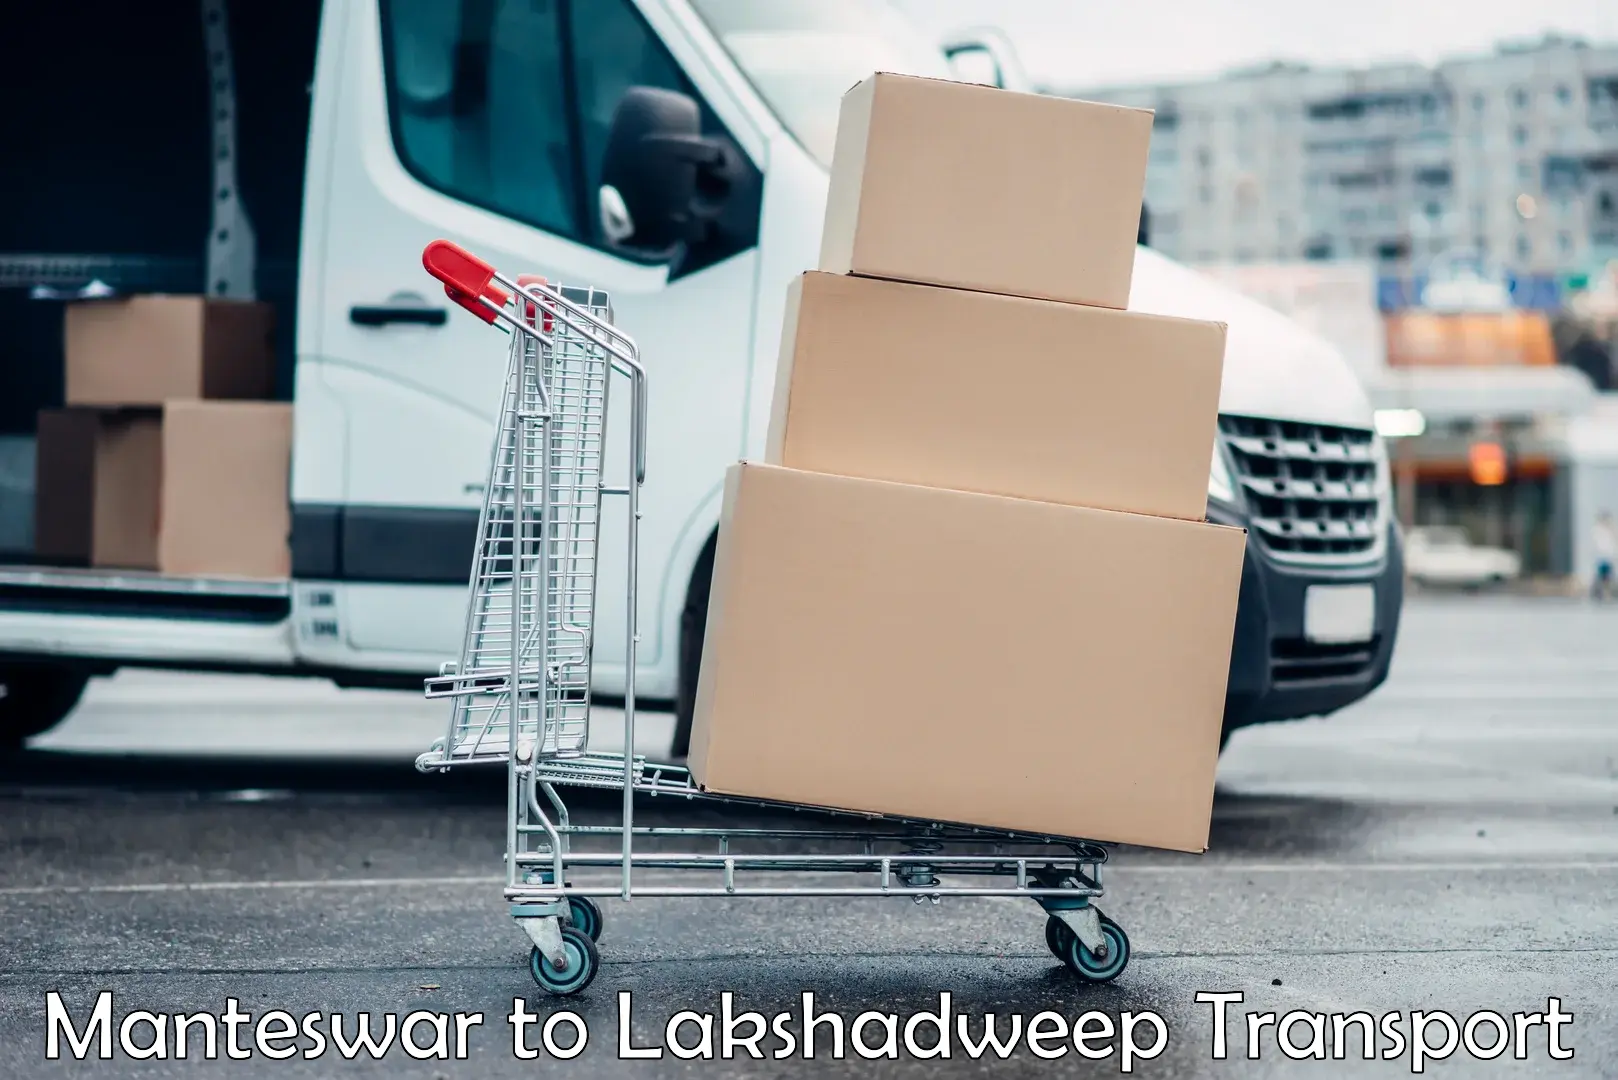 Transport in sharing Manteswar to Lakshadweep